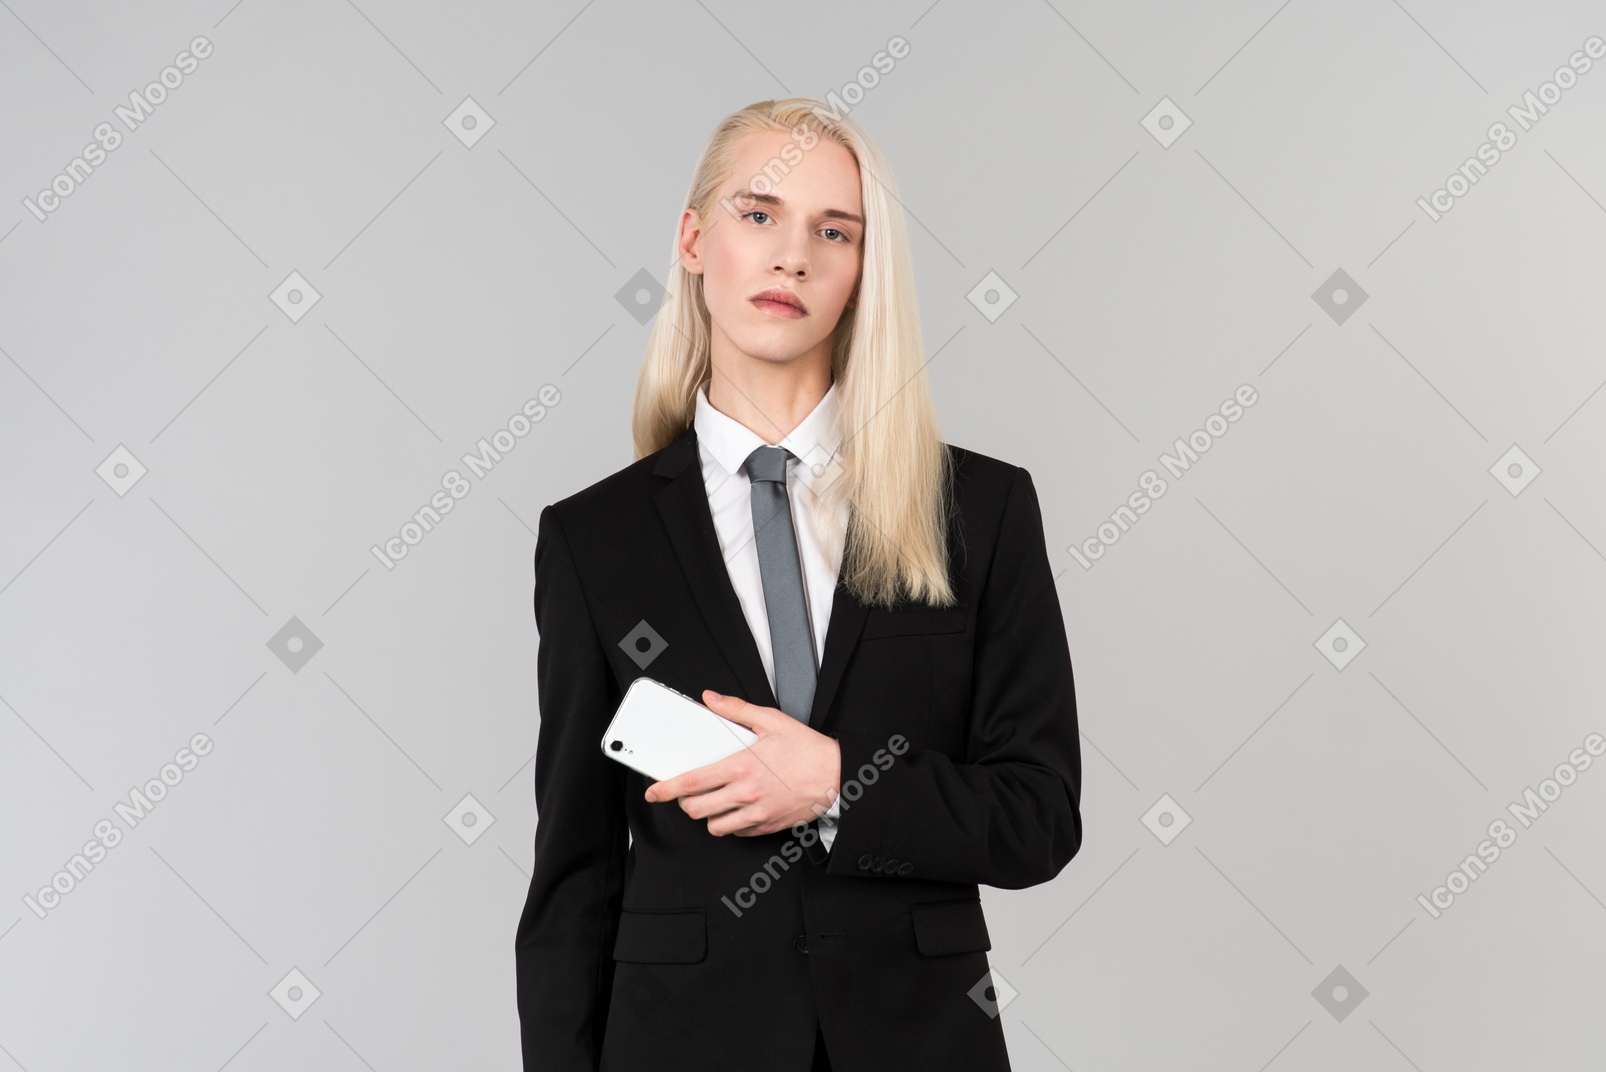 Молодой симпатичный мужчина с длинными светлыми волосами, в черном костюме и галстуке, стоит на ровном сером фоне